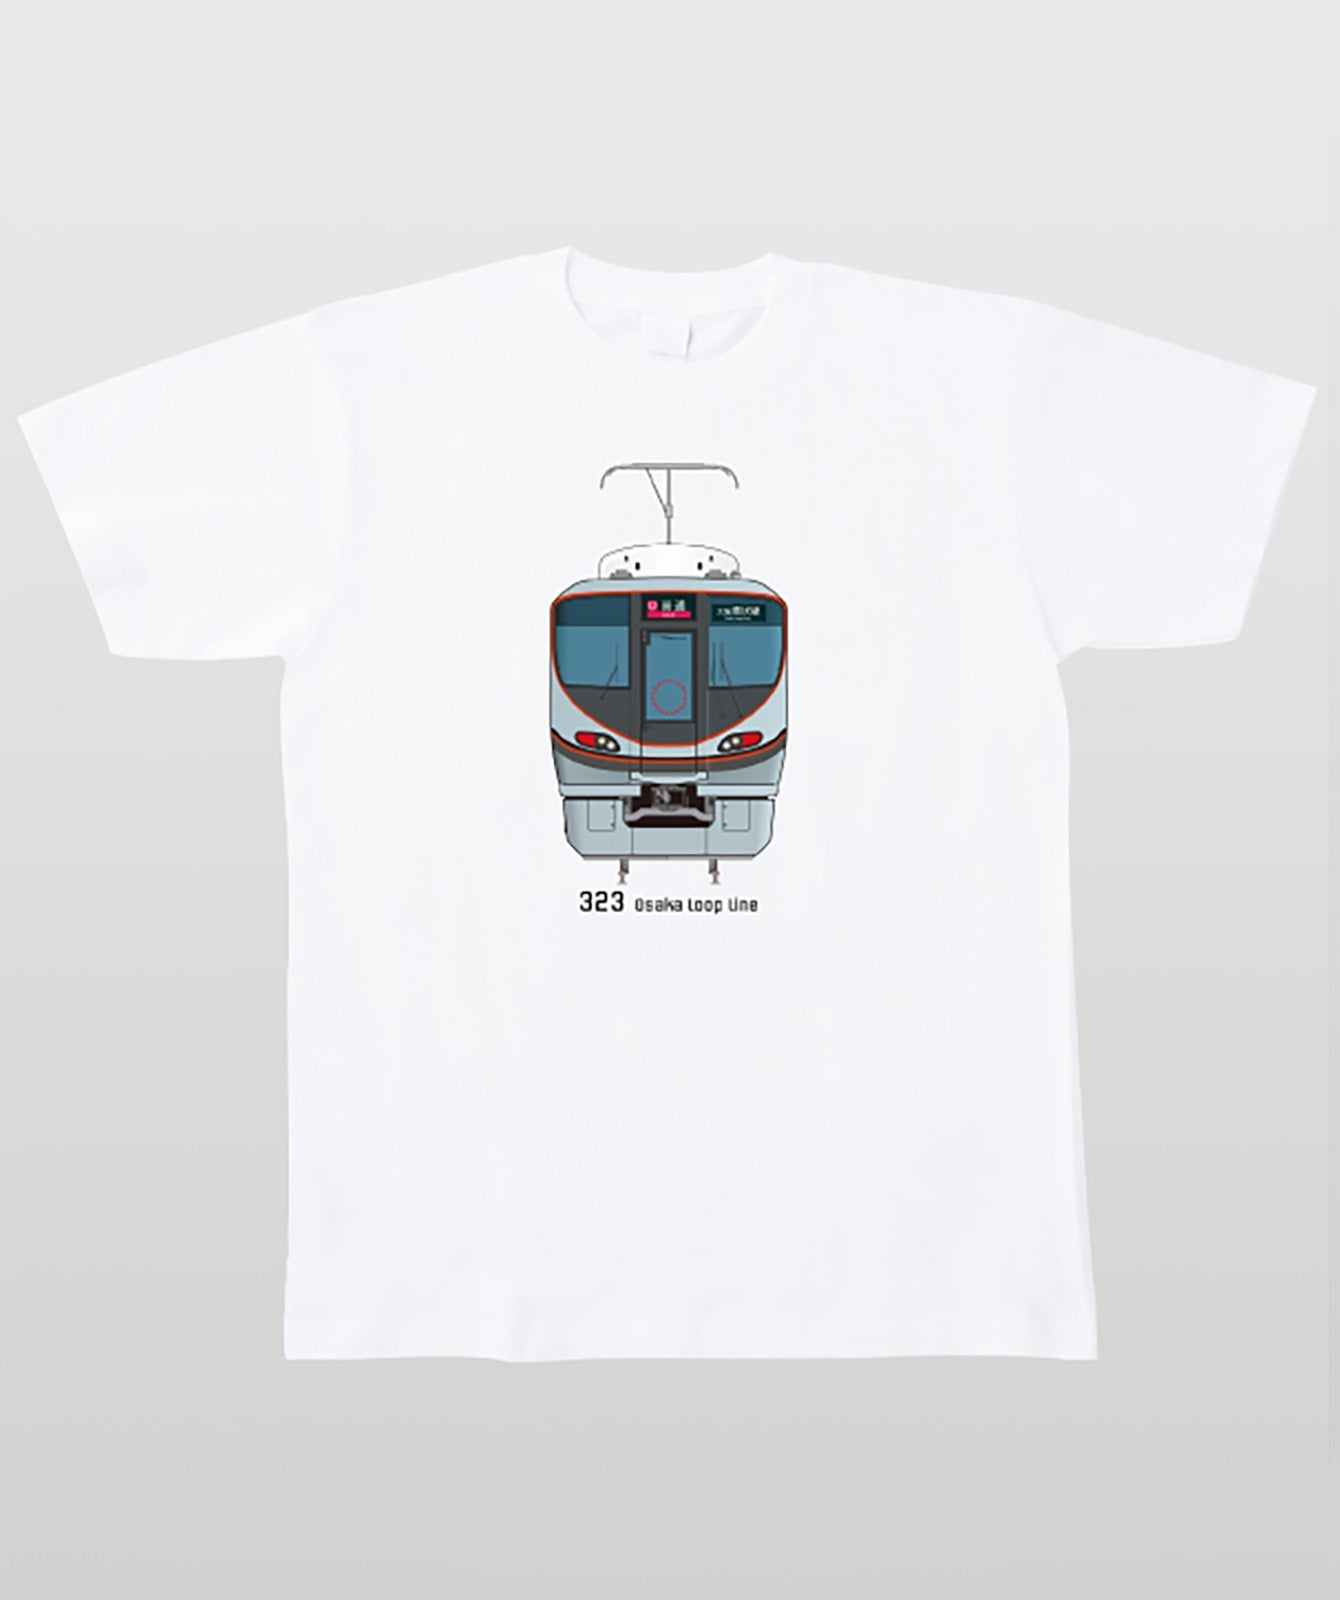 電車の顔図鑑Tシャツ 323系大阪環状線 Type A